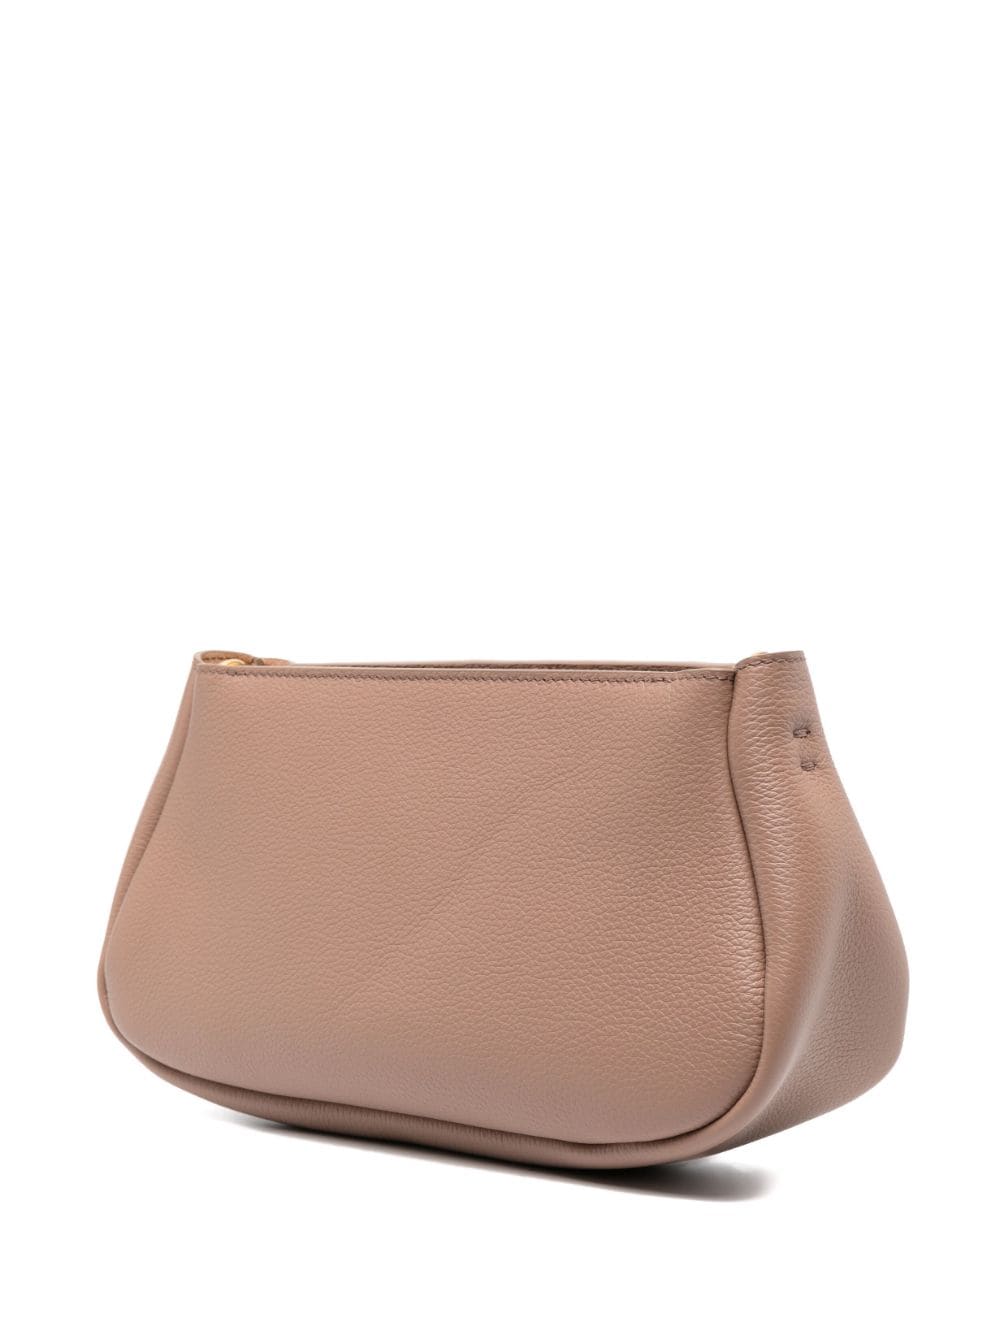 CHLOÉ Blush Pink Leather Shoulder Handbag for Women